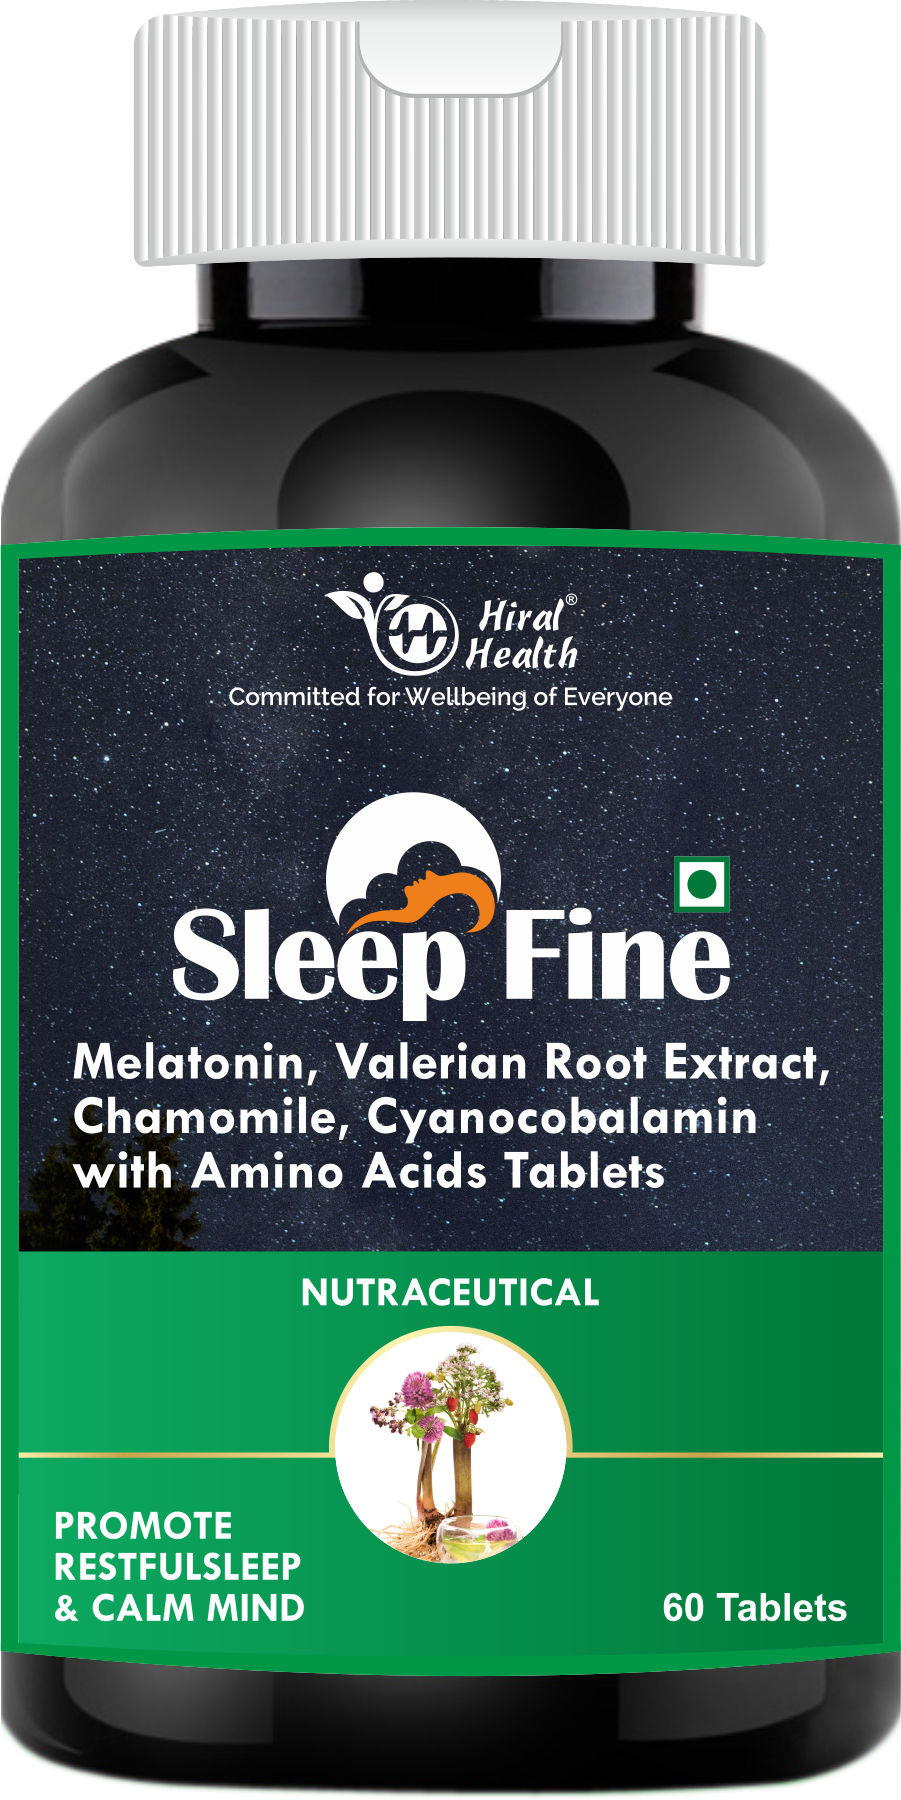 Hiral Health Slep fine sleep support supplement,